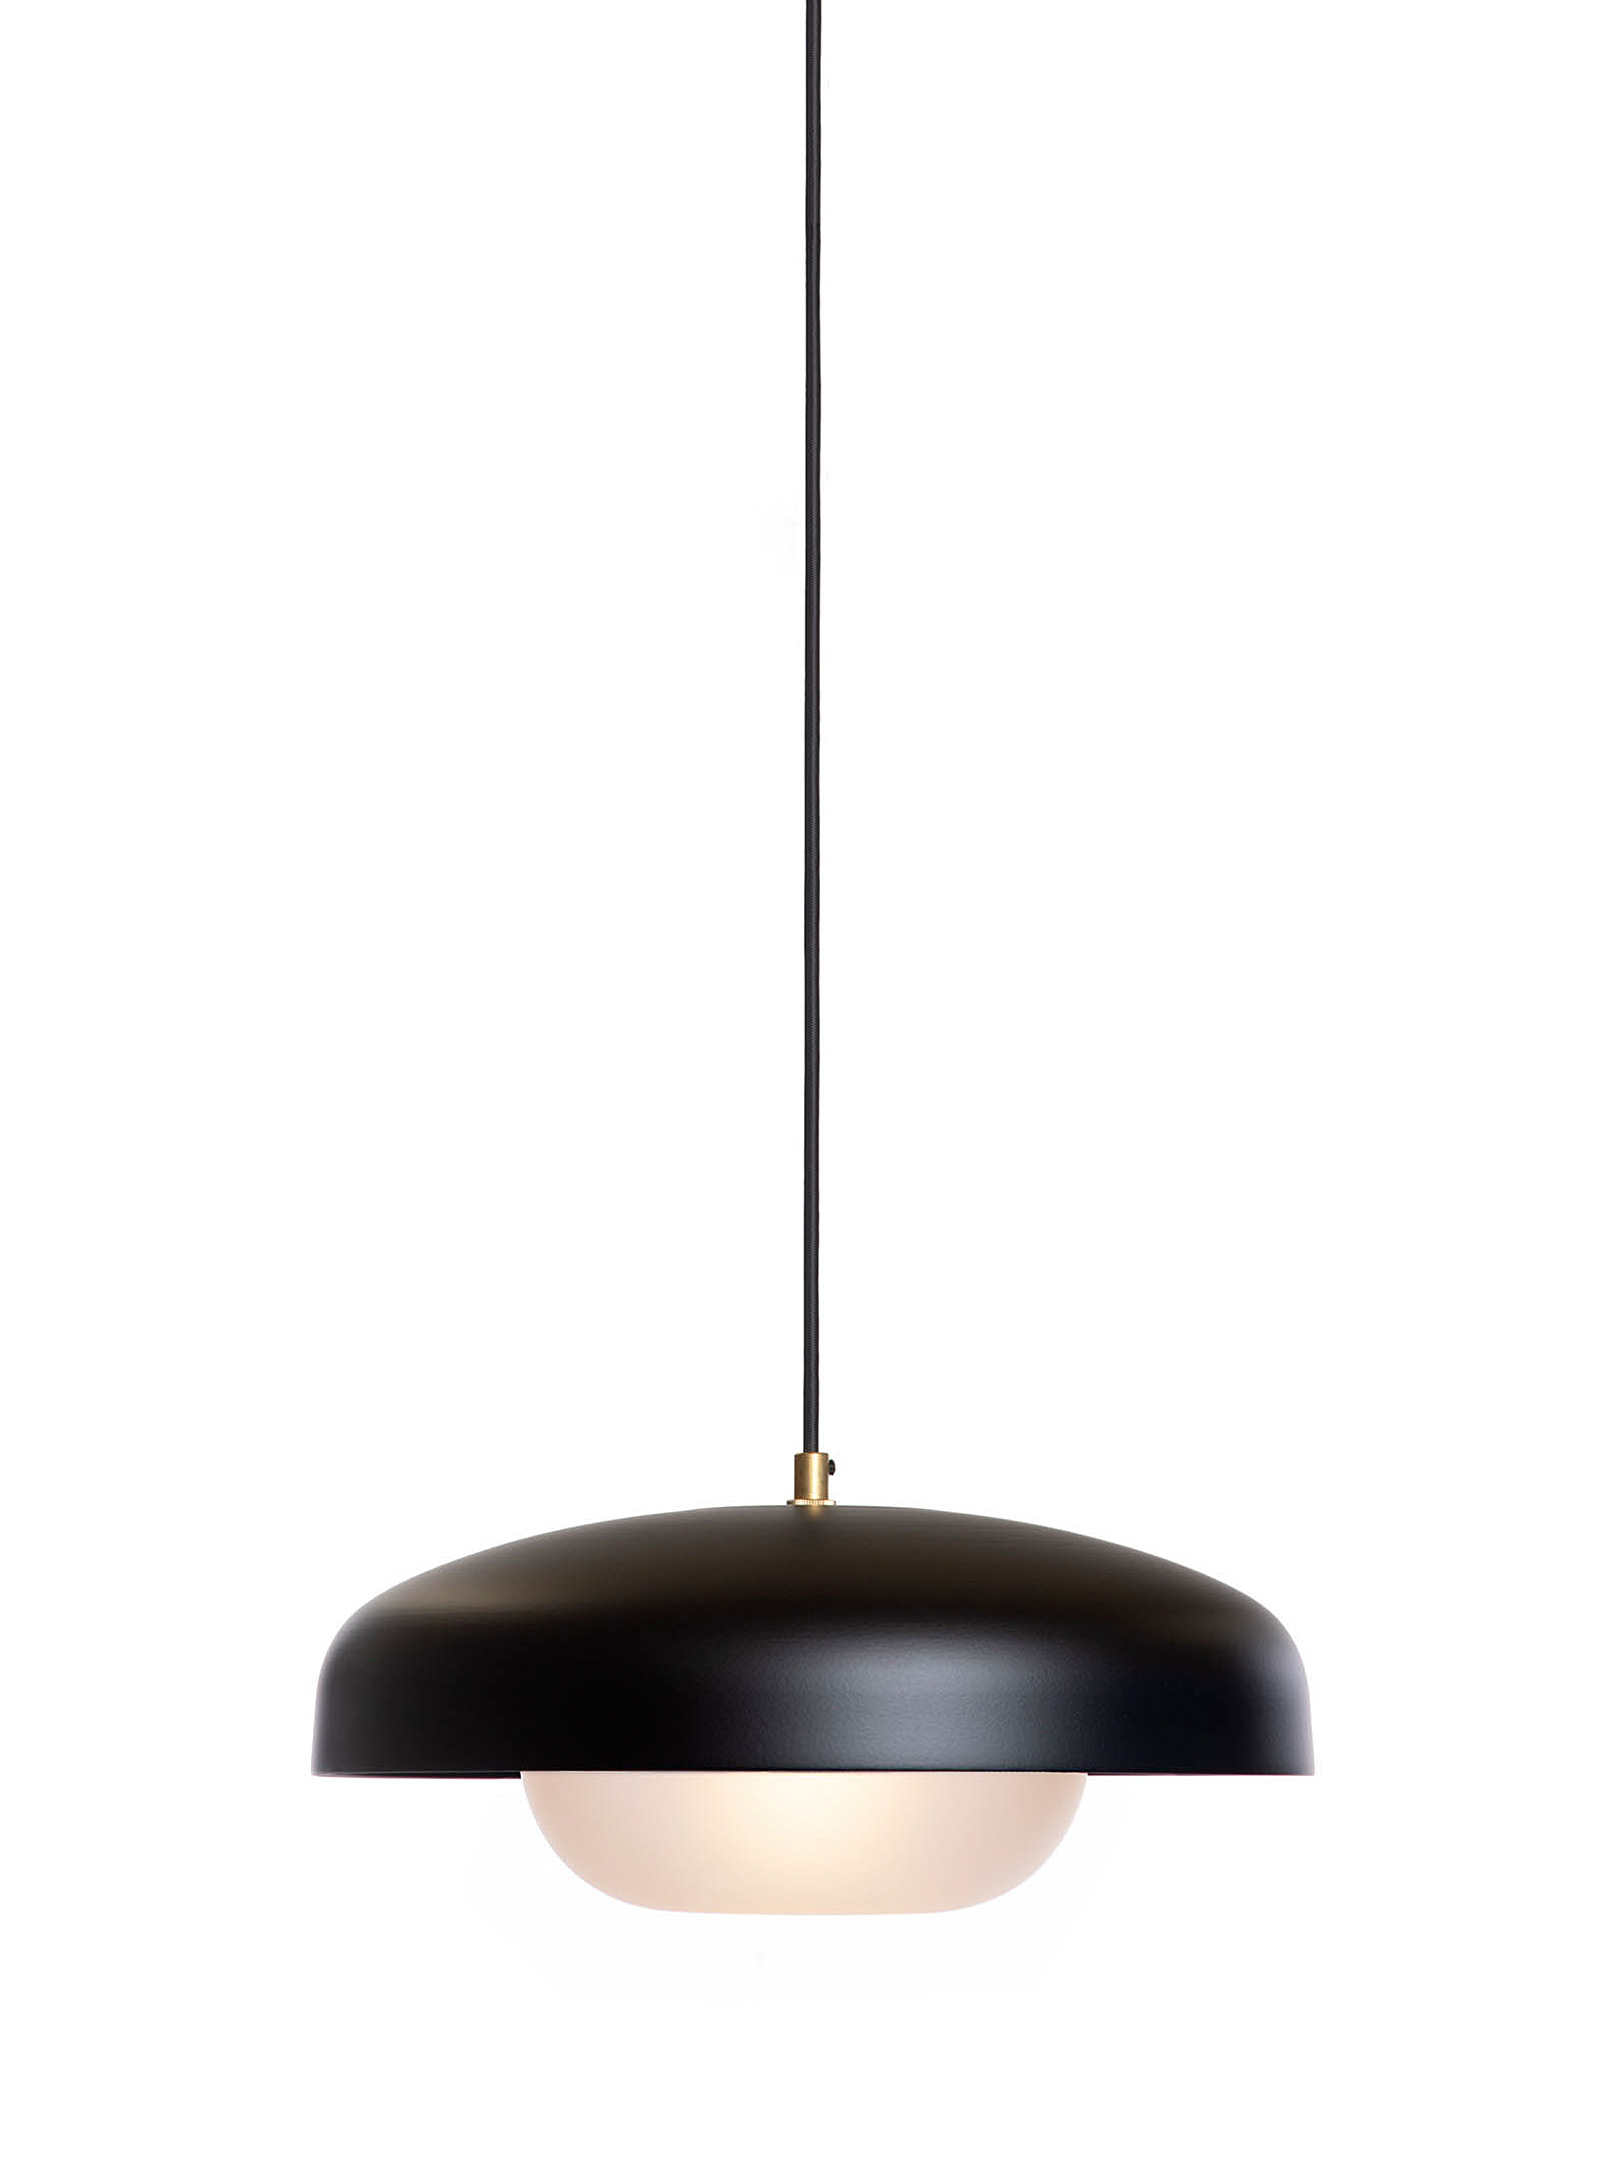 Luminaire Authentik Large Yoko Hanging Lamp In Black